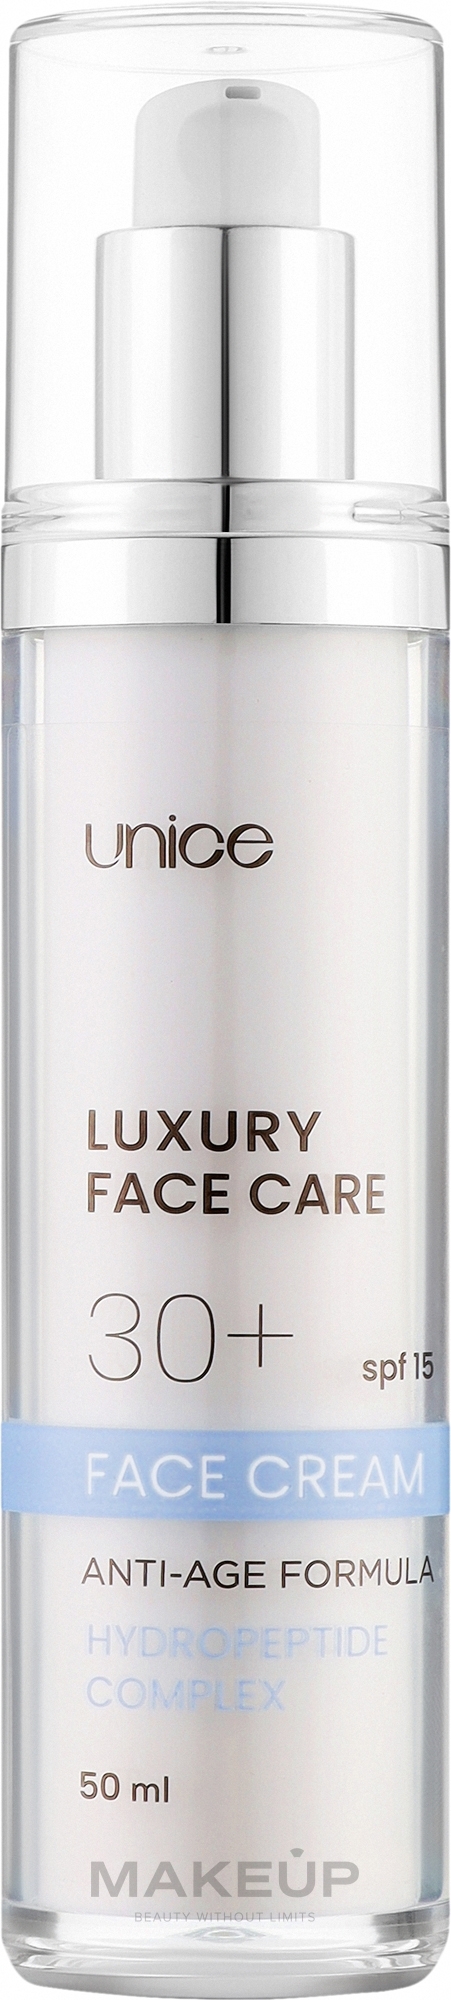 Увлажняющий крем для лица с эффектом лифтинга - Unice Hydropeptide Face Cream SPF15 — фото 50ml